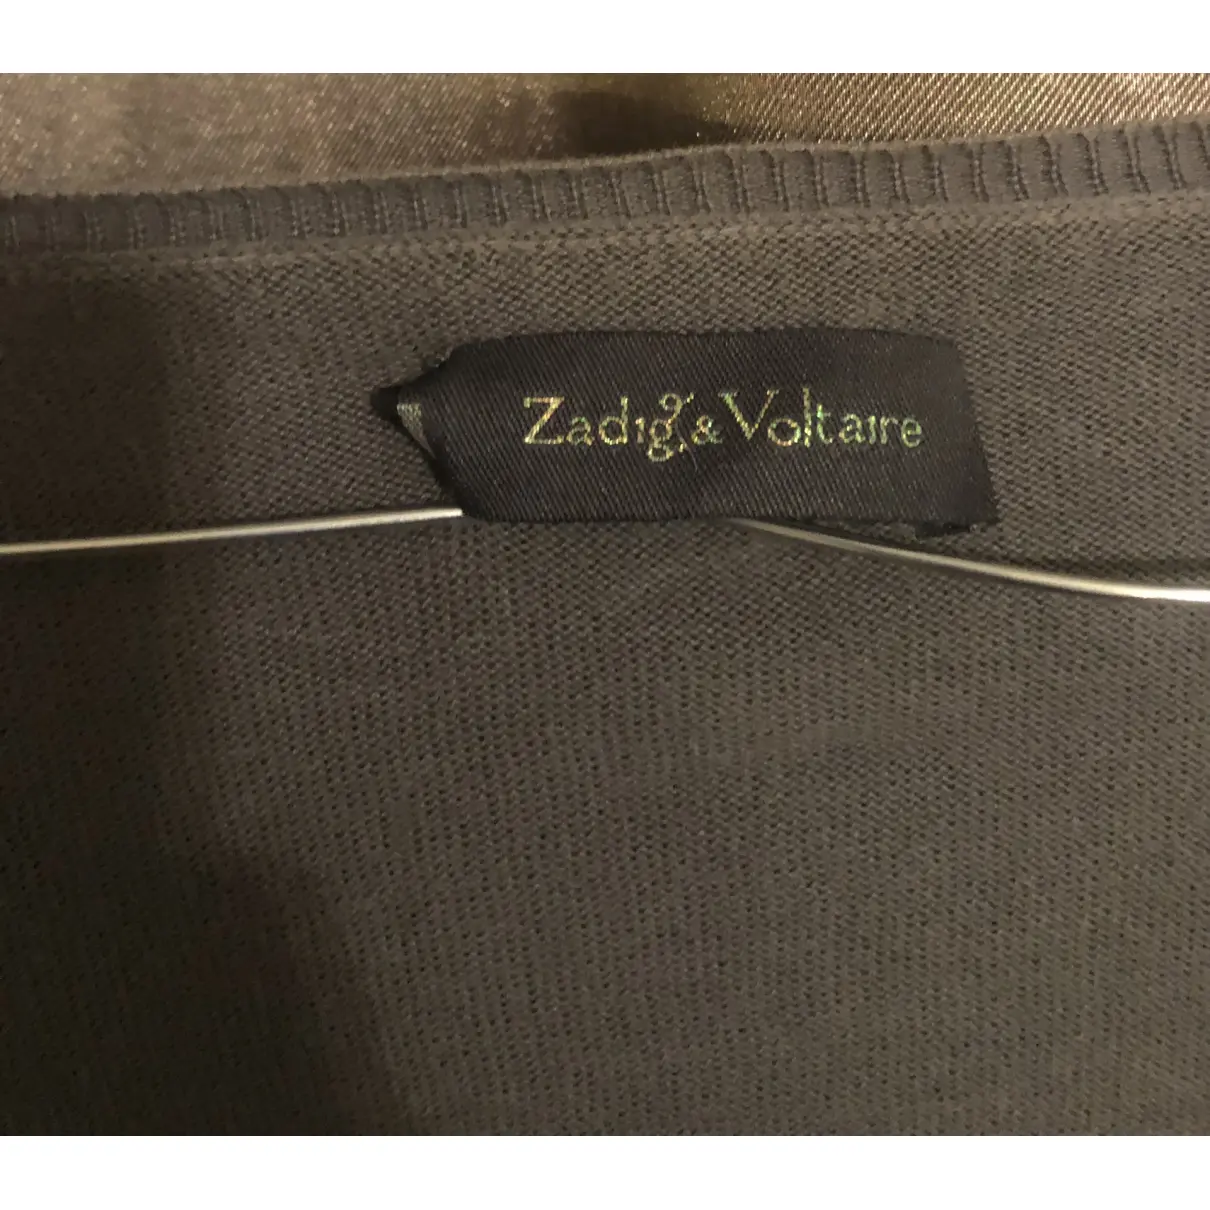 Buy Zadig & Voltaire Cardigan online